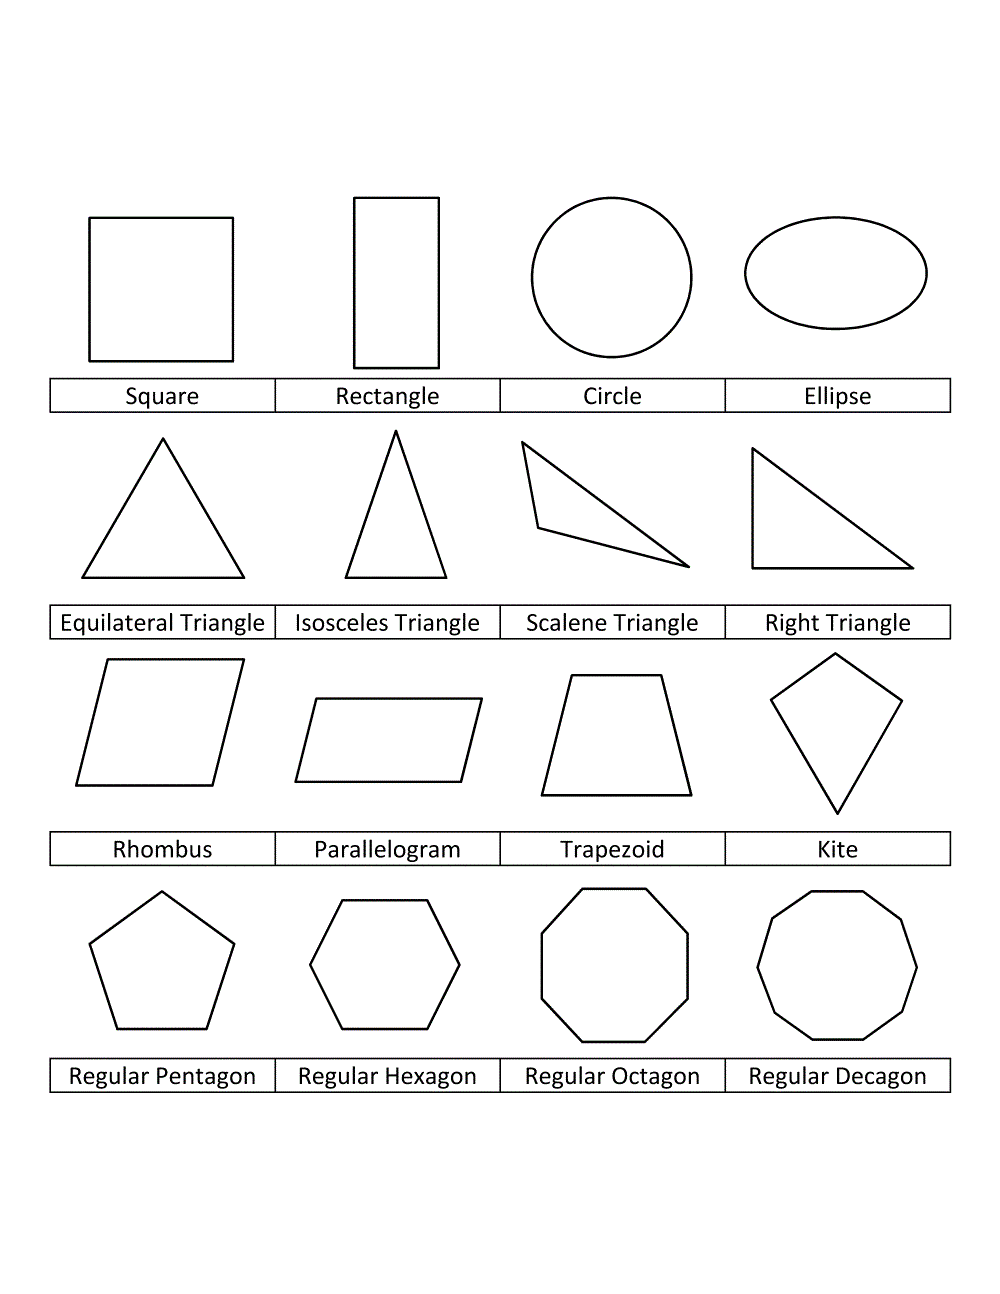 Фигуры список. Геометрические фигуры и их названия. Геометрические фигуры названия. Плоские геометрические фигуры. Формы геометрических фигур и их названия.